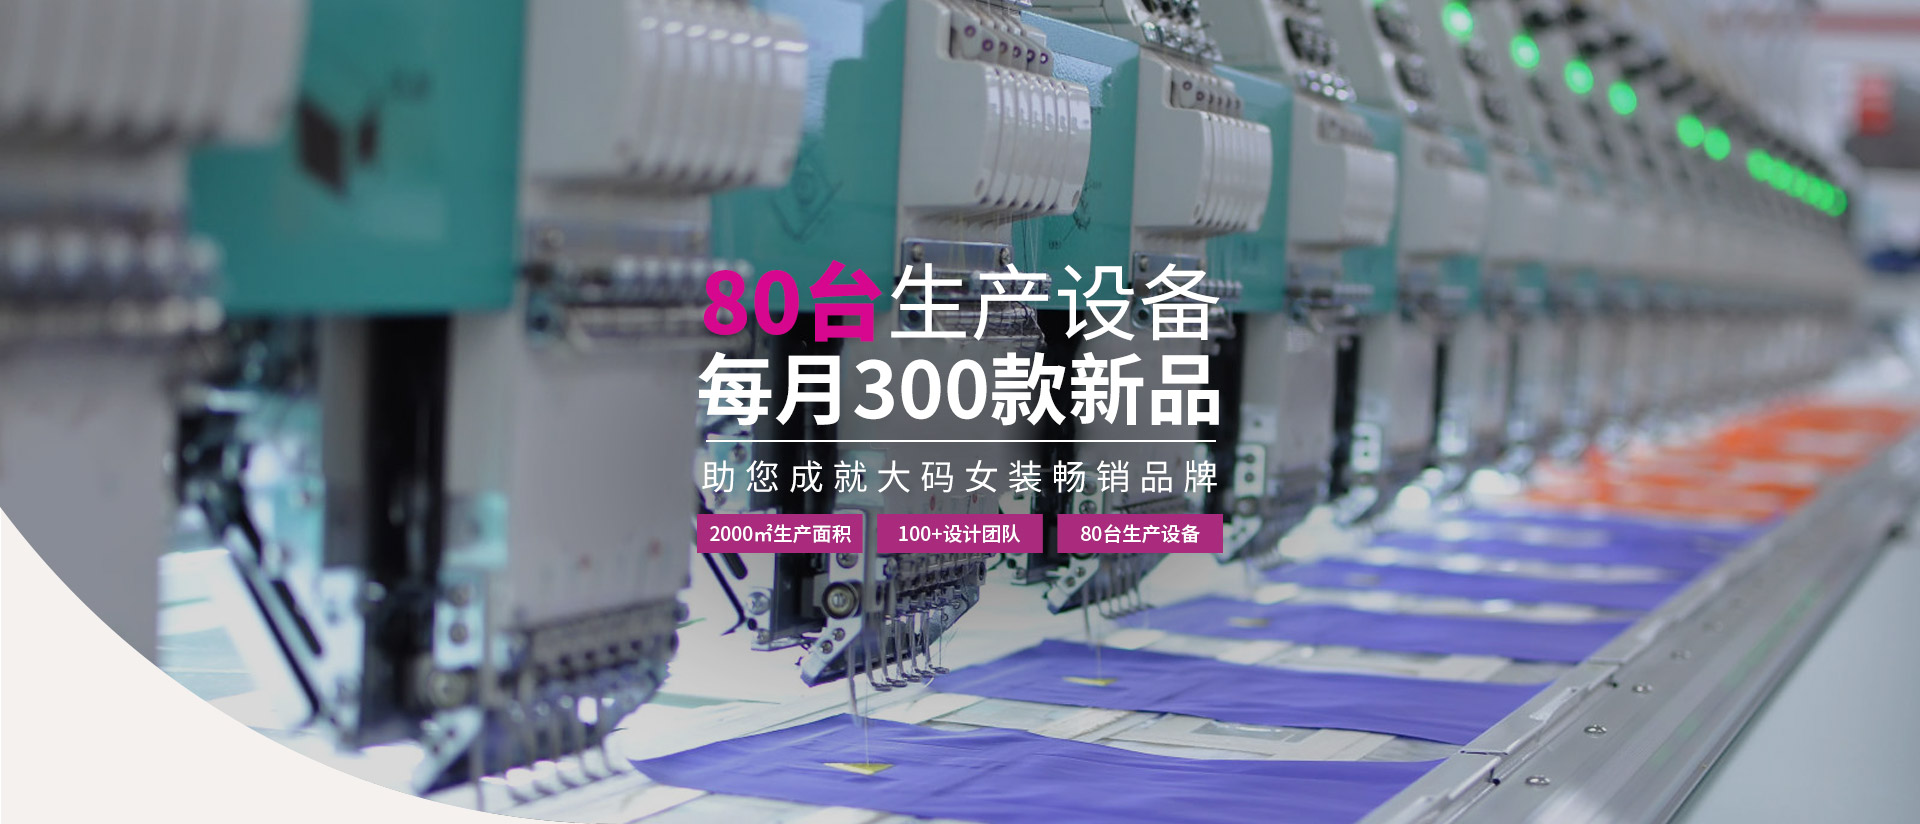 法莱利尔-80台生产设备  每月300款新品